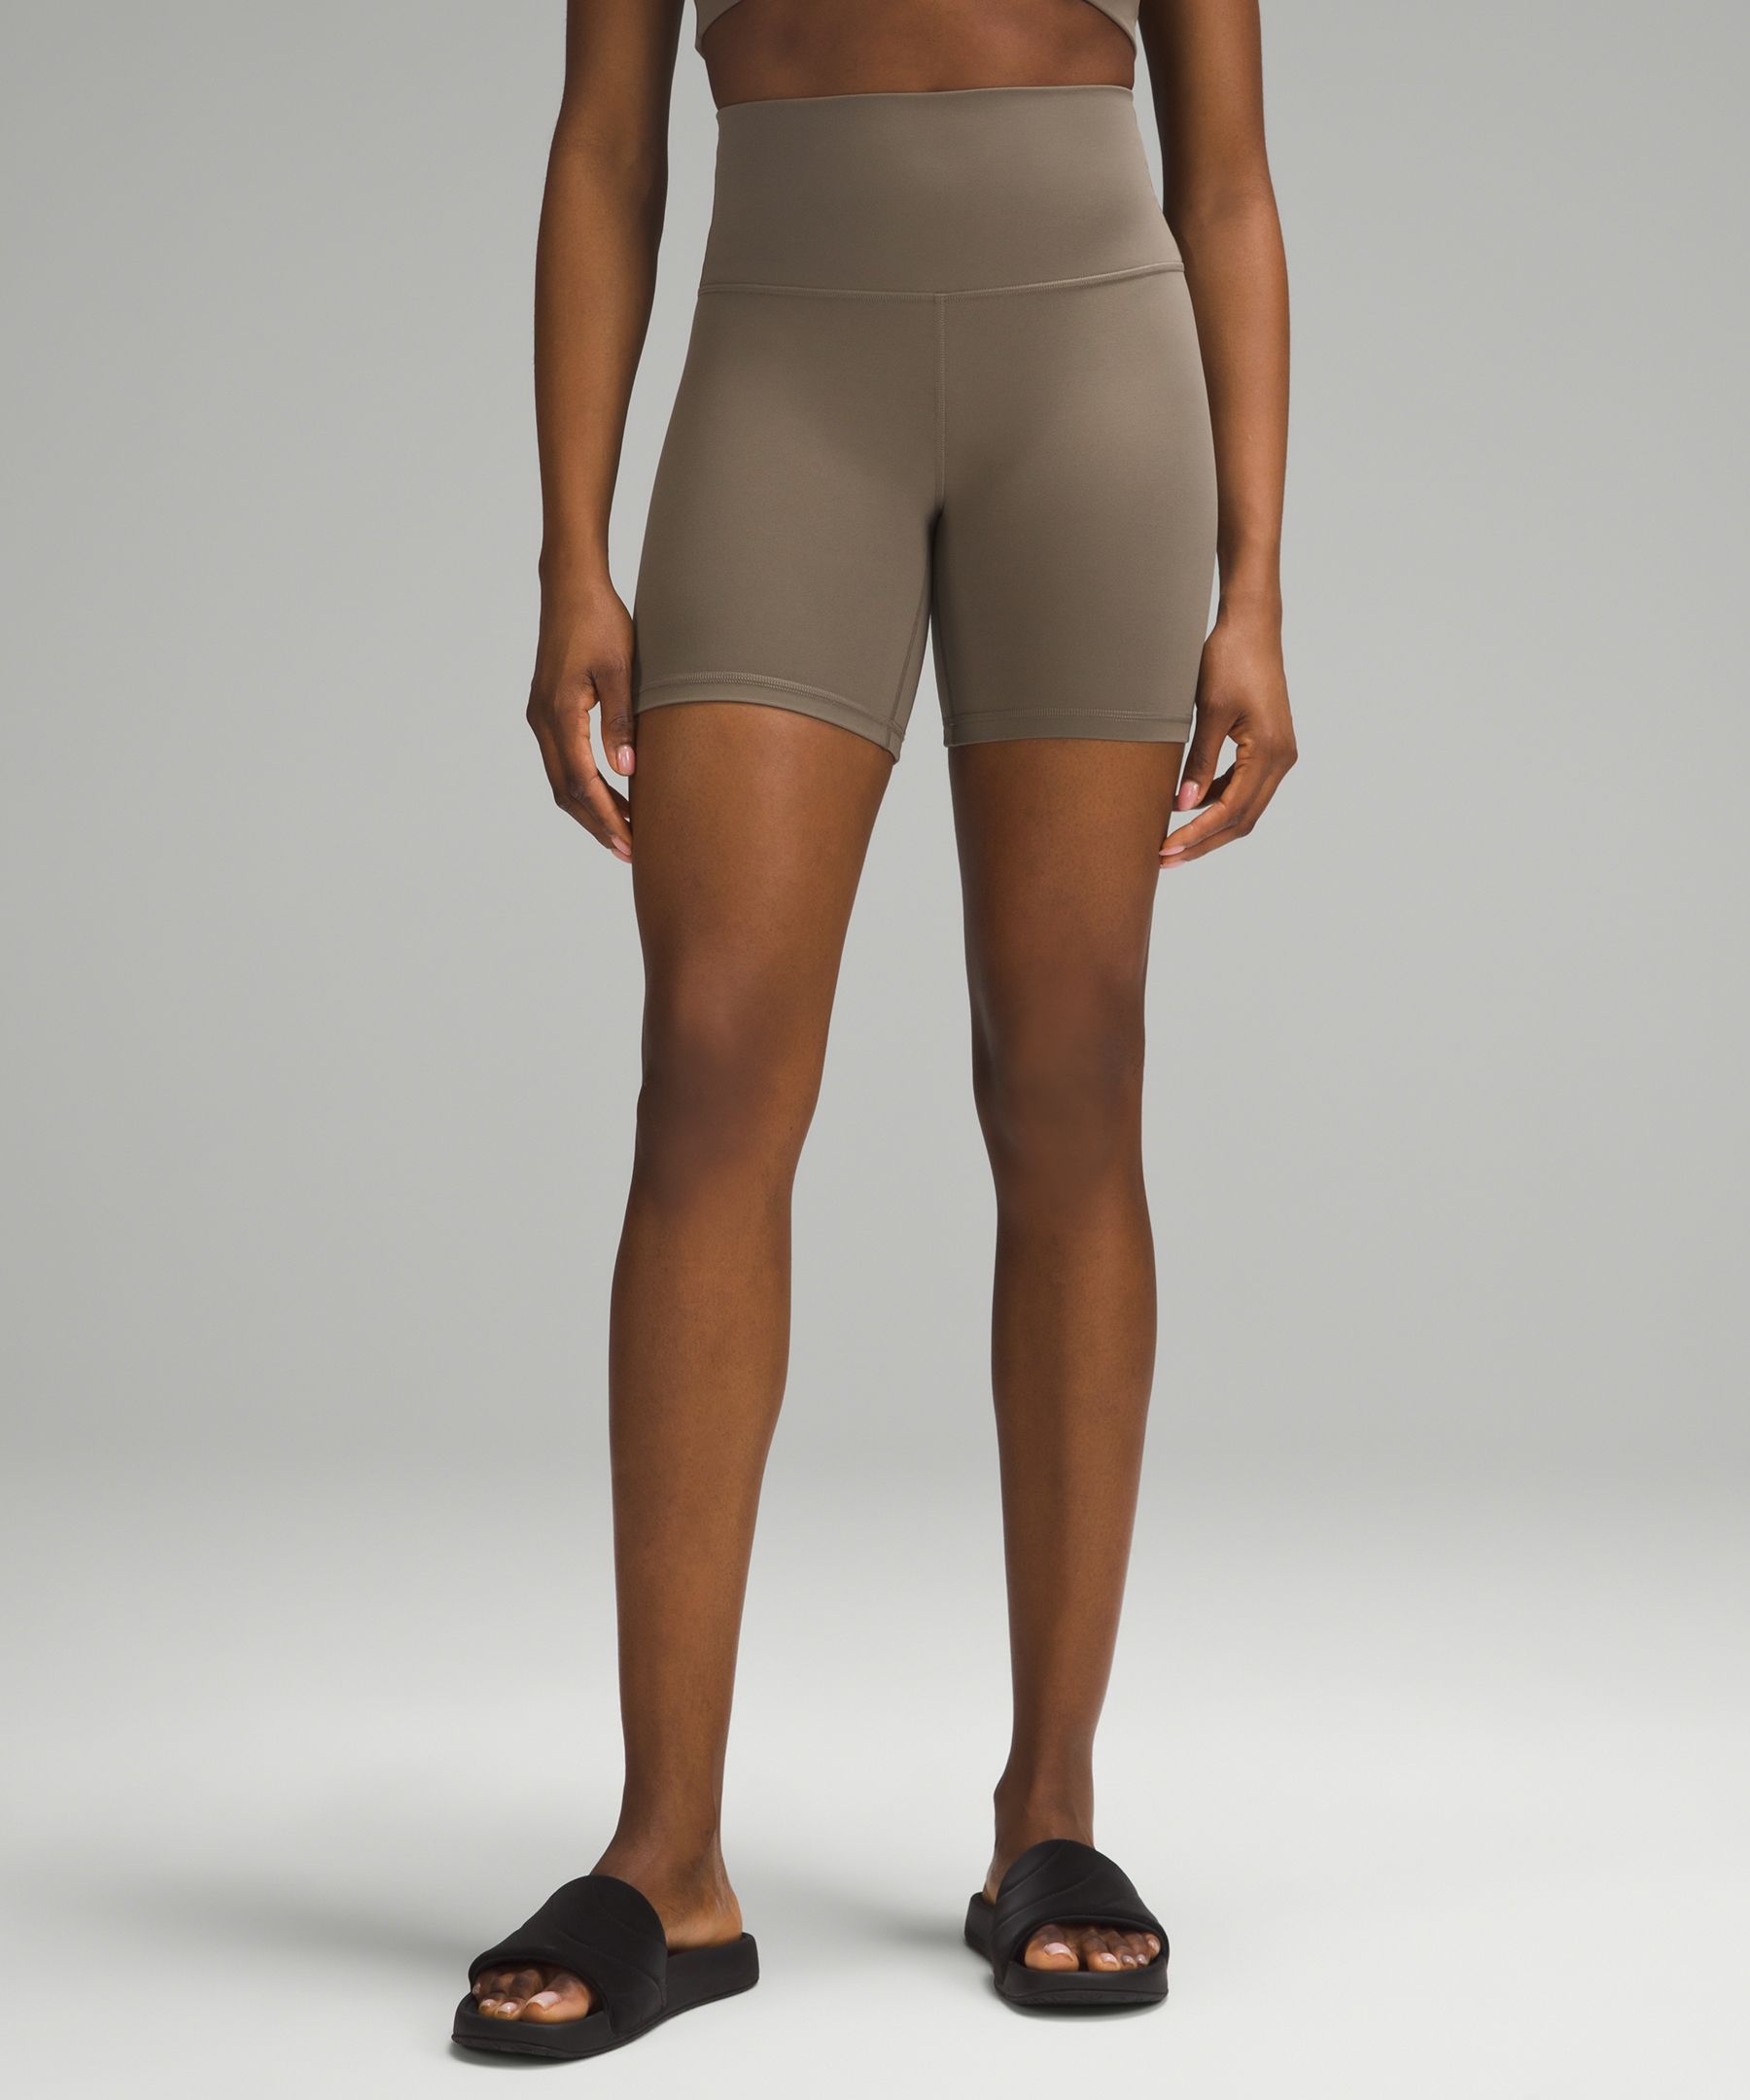 lululemon Align™ High-Rise Short 6, Women's Shorts, lululemon